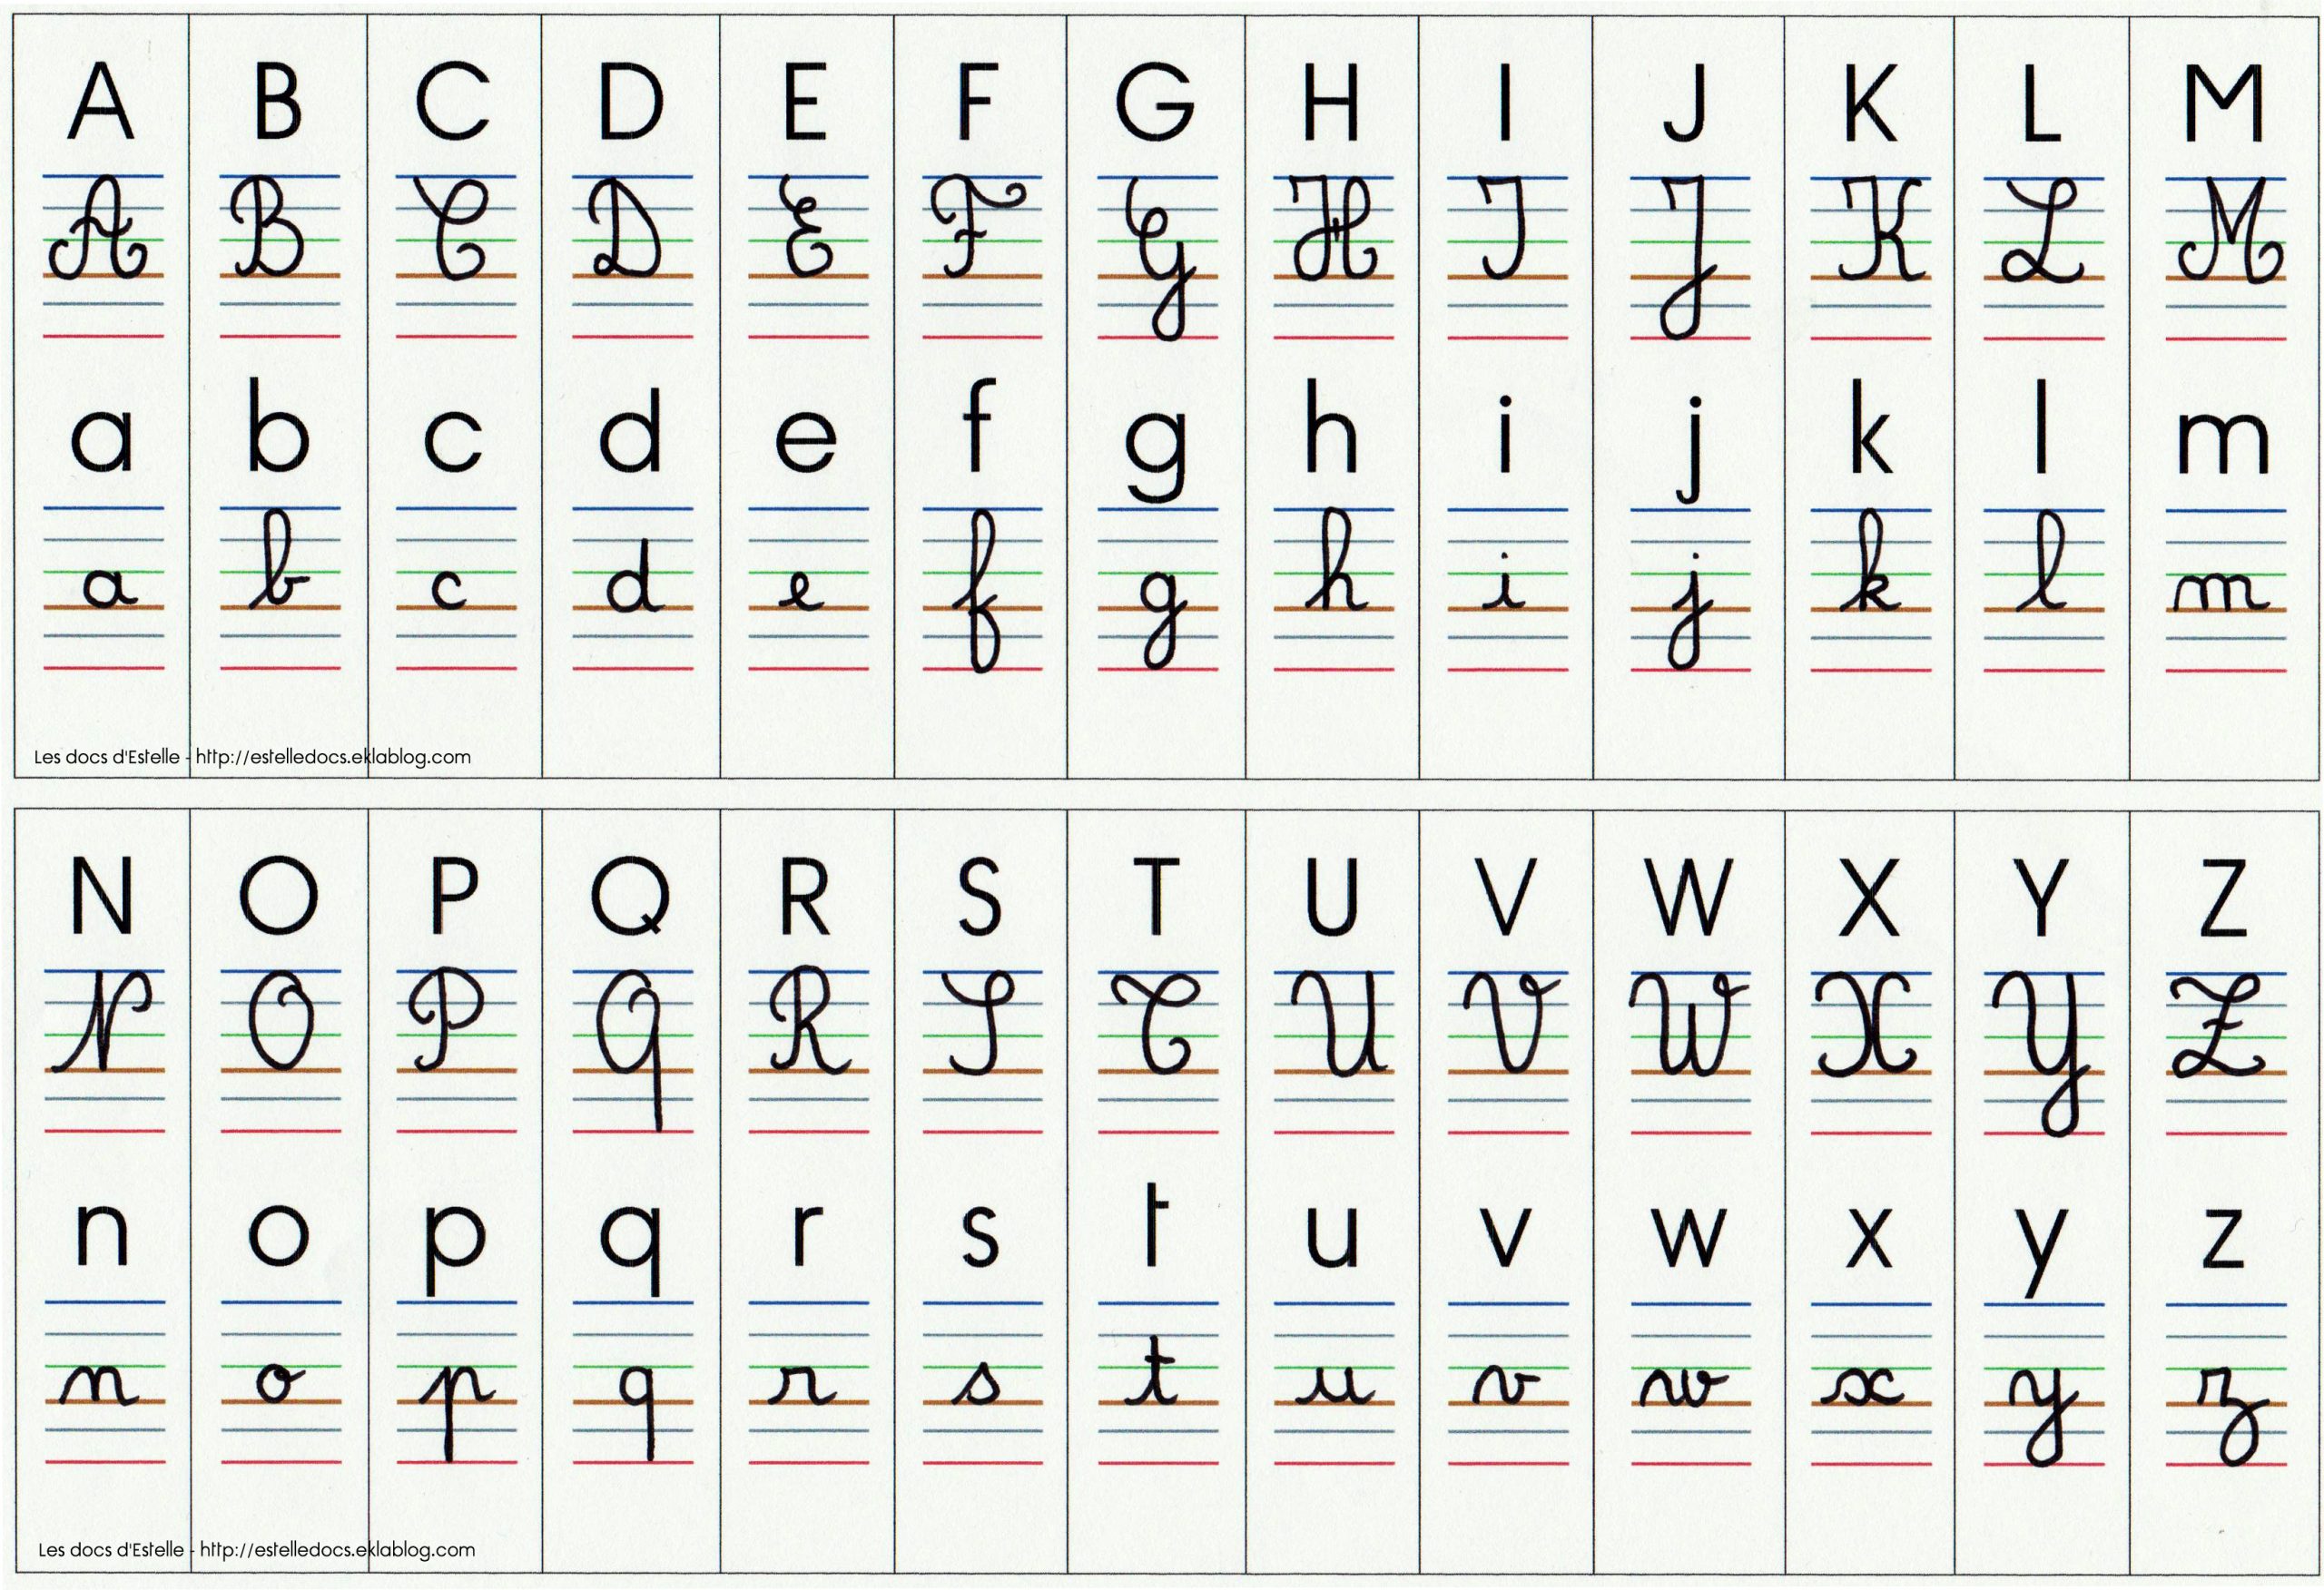 Affichage Alphabet 4 Écritures - Les Docs D'estelle destiné Modele Alphabet Majuscule